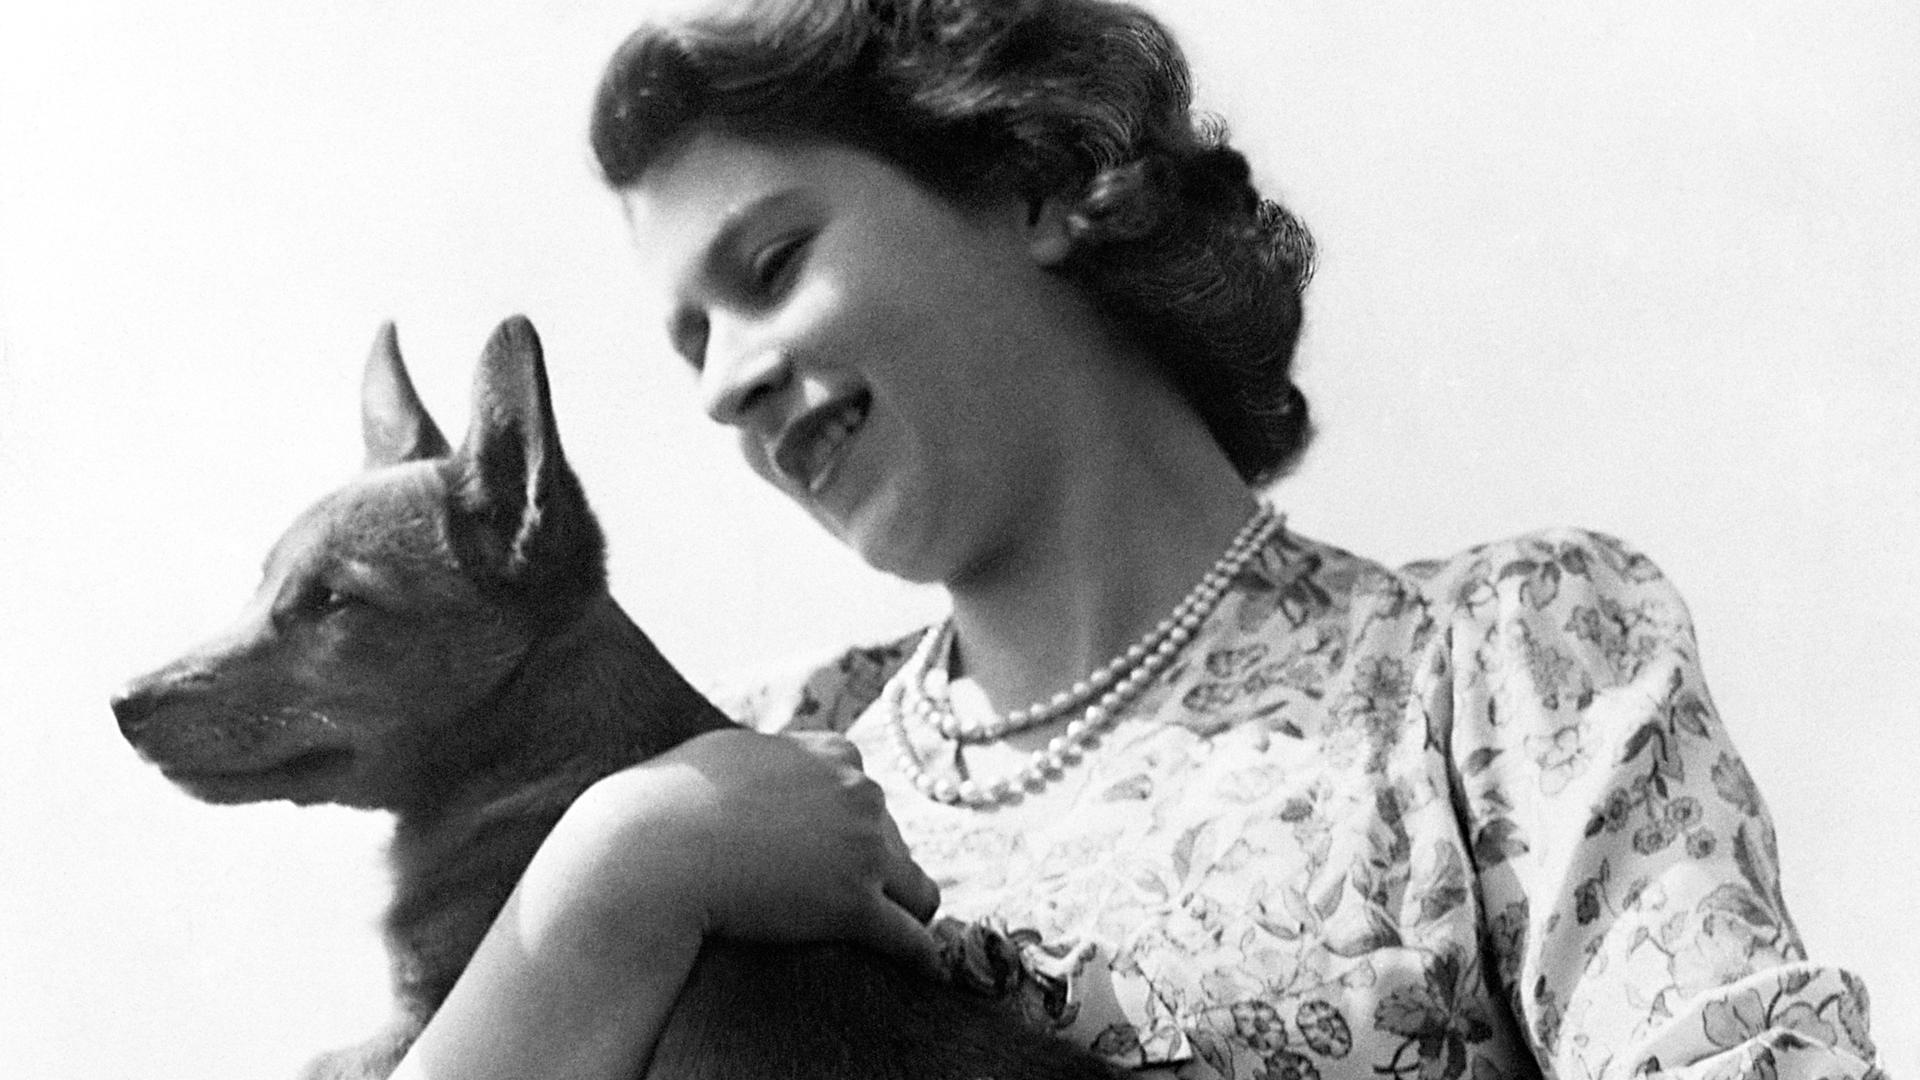 Die junge Prinzessin Elizabeth mit einem ihrer Corgis: Die verstorbene britische Monarchin hatte bereits als Kind die in England früher seltene Hunderasse bewundert. Sie bekam ihren ersten Corgi von ihrem Vater als Geschenk zum 18. Geburtstag. 